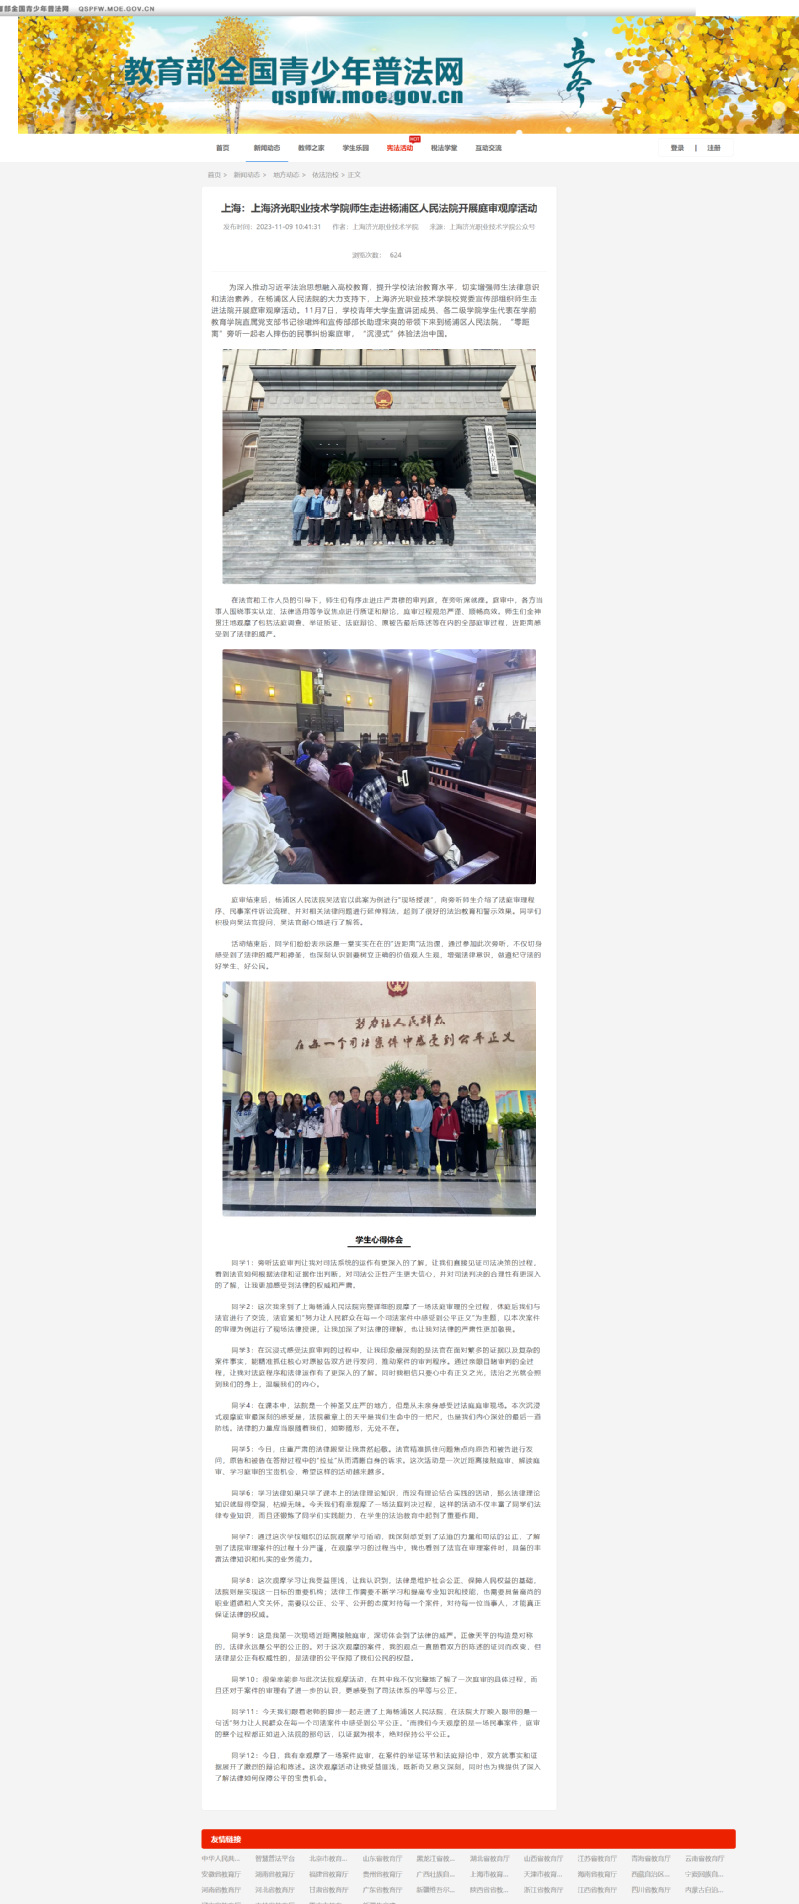 教育部全国青少年普法网依法治校专栏刊登了上海济光职业技术学院庭审观摩活动信息